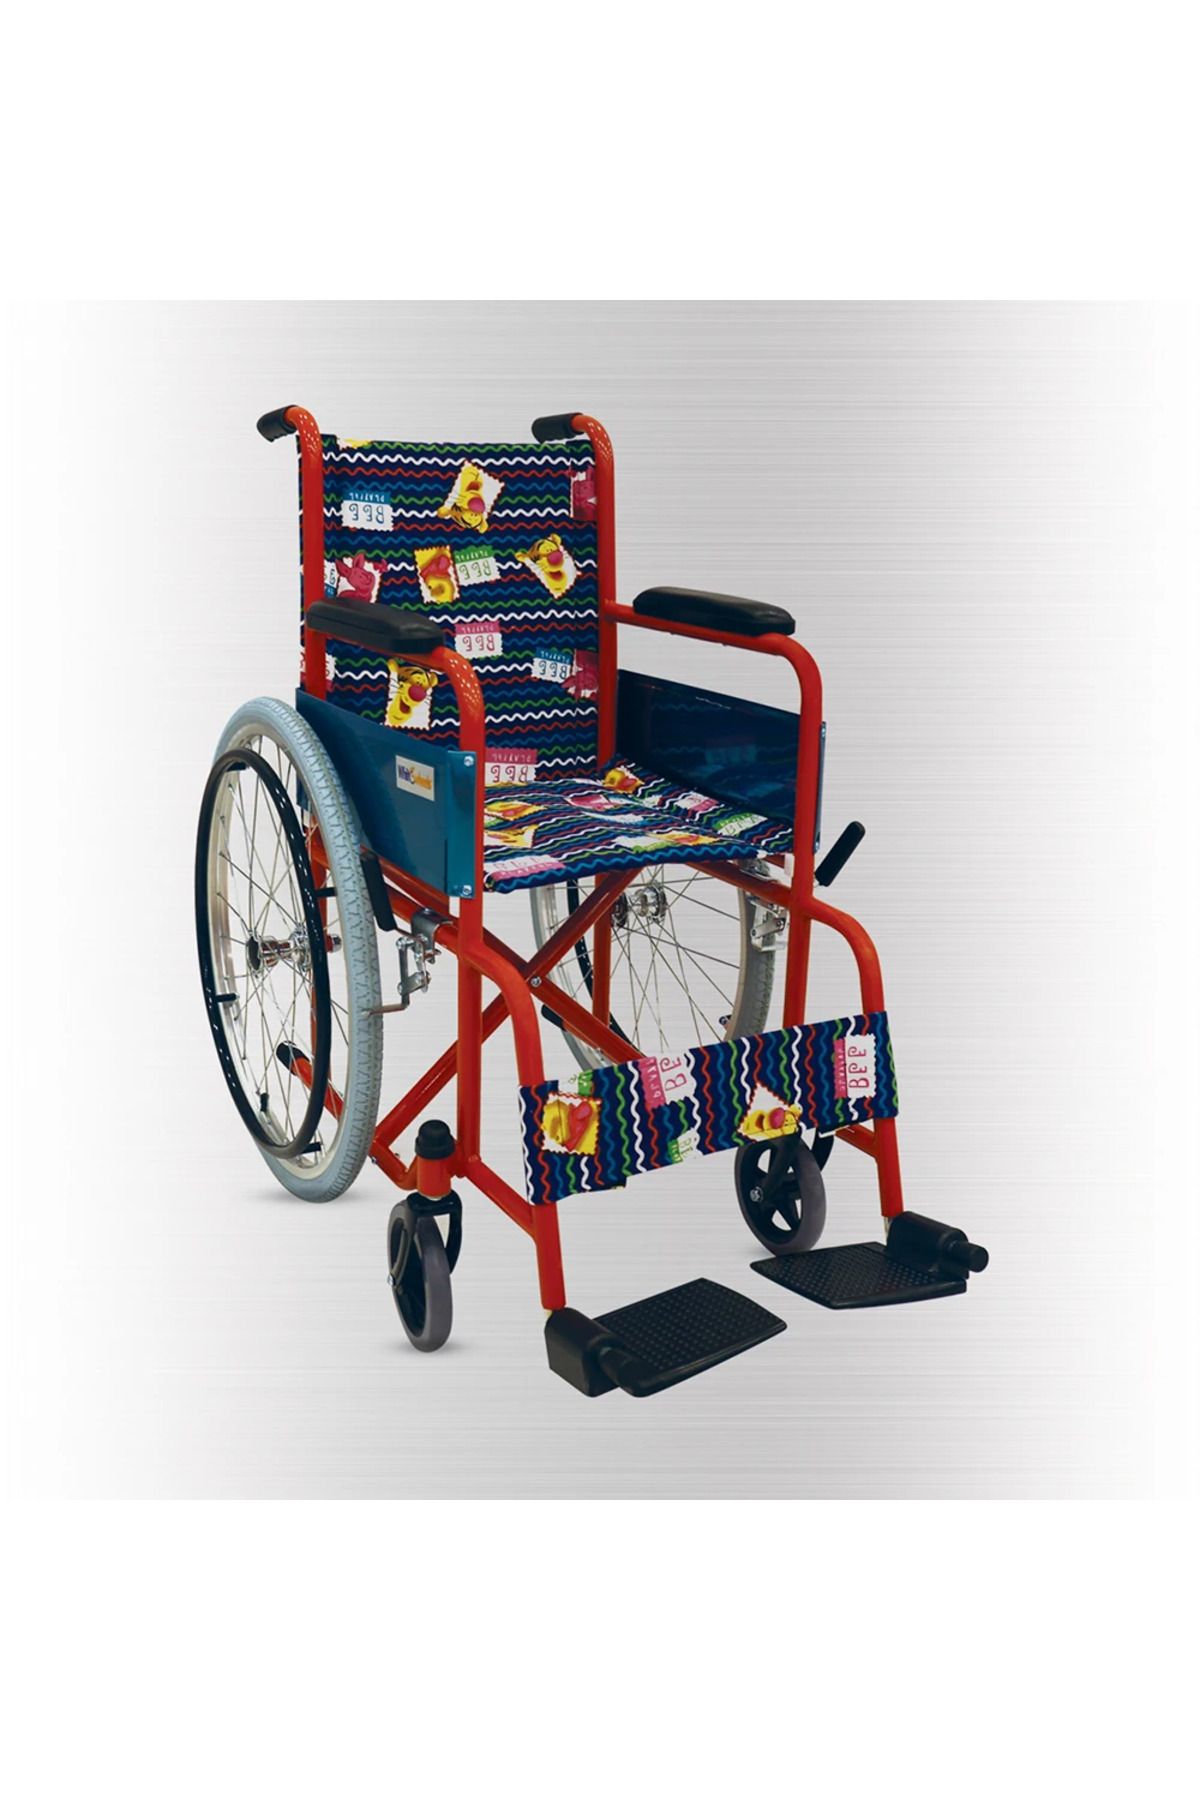 BGM Çocuk Tekerlekli Sandalye Yüksek Kalite Katlanır Çocuk Tekerlekli Sandalyesi